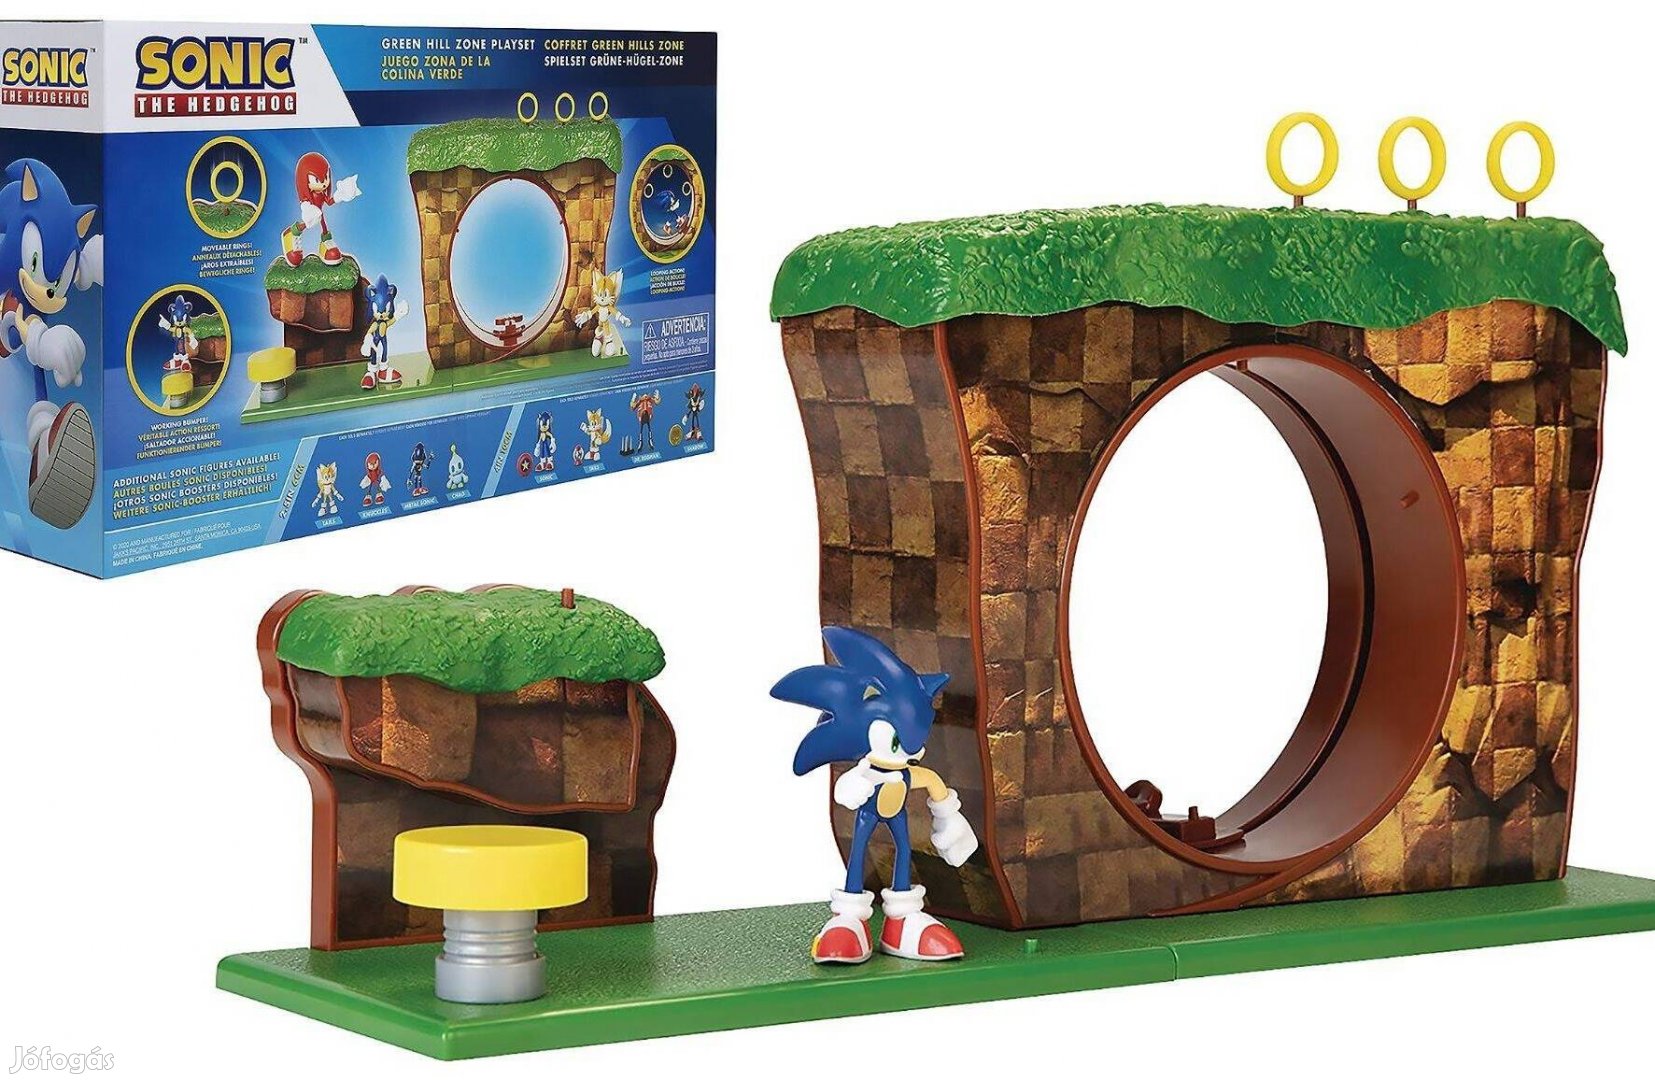 Sonic a sündisznó Green hill zone pálya játék szett Sega Jakks